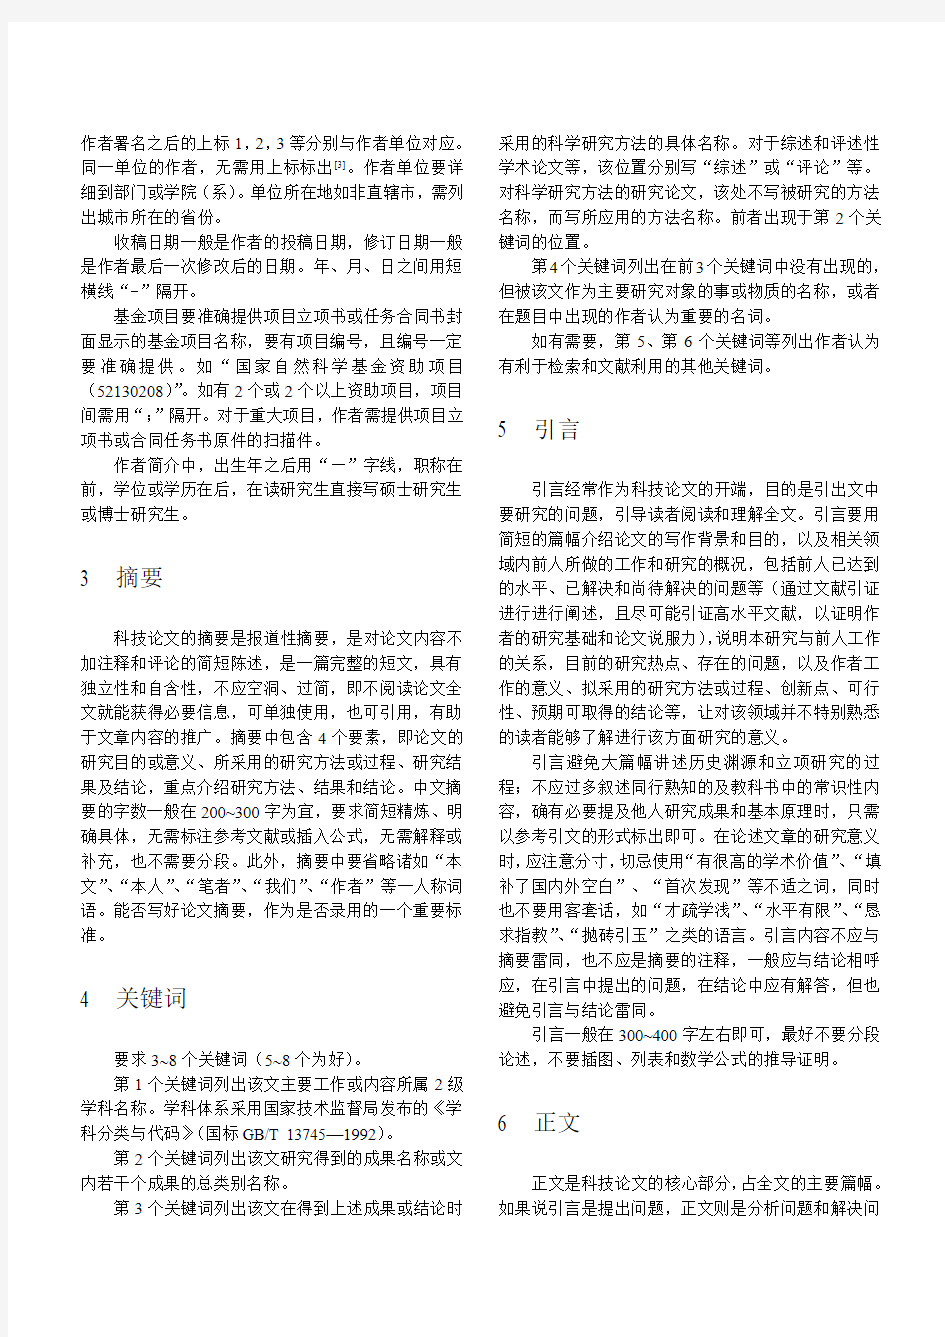 论文书写格式-设计在线中国